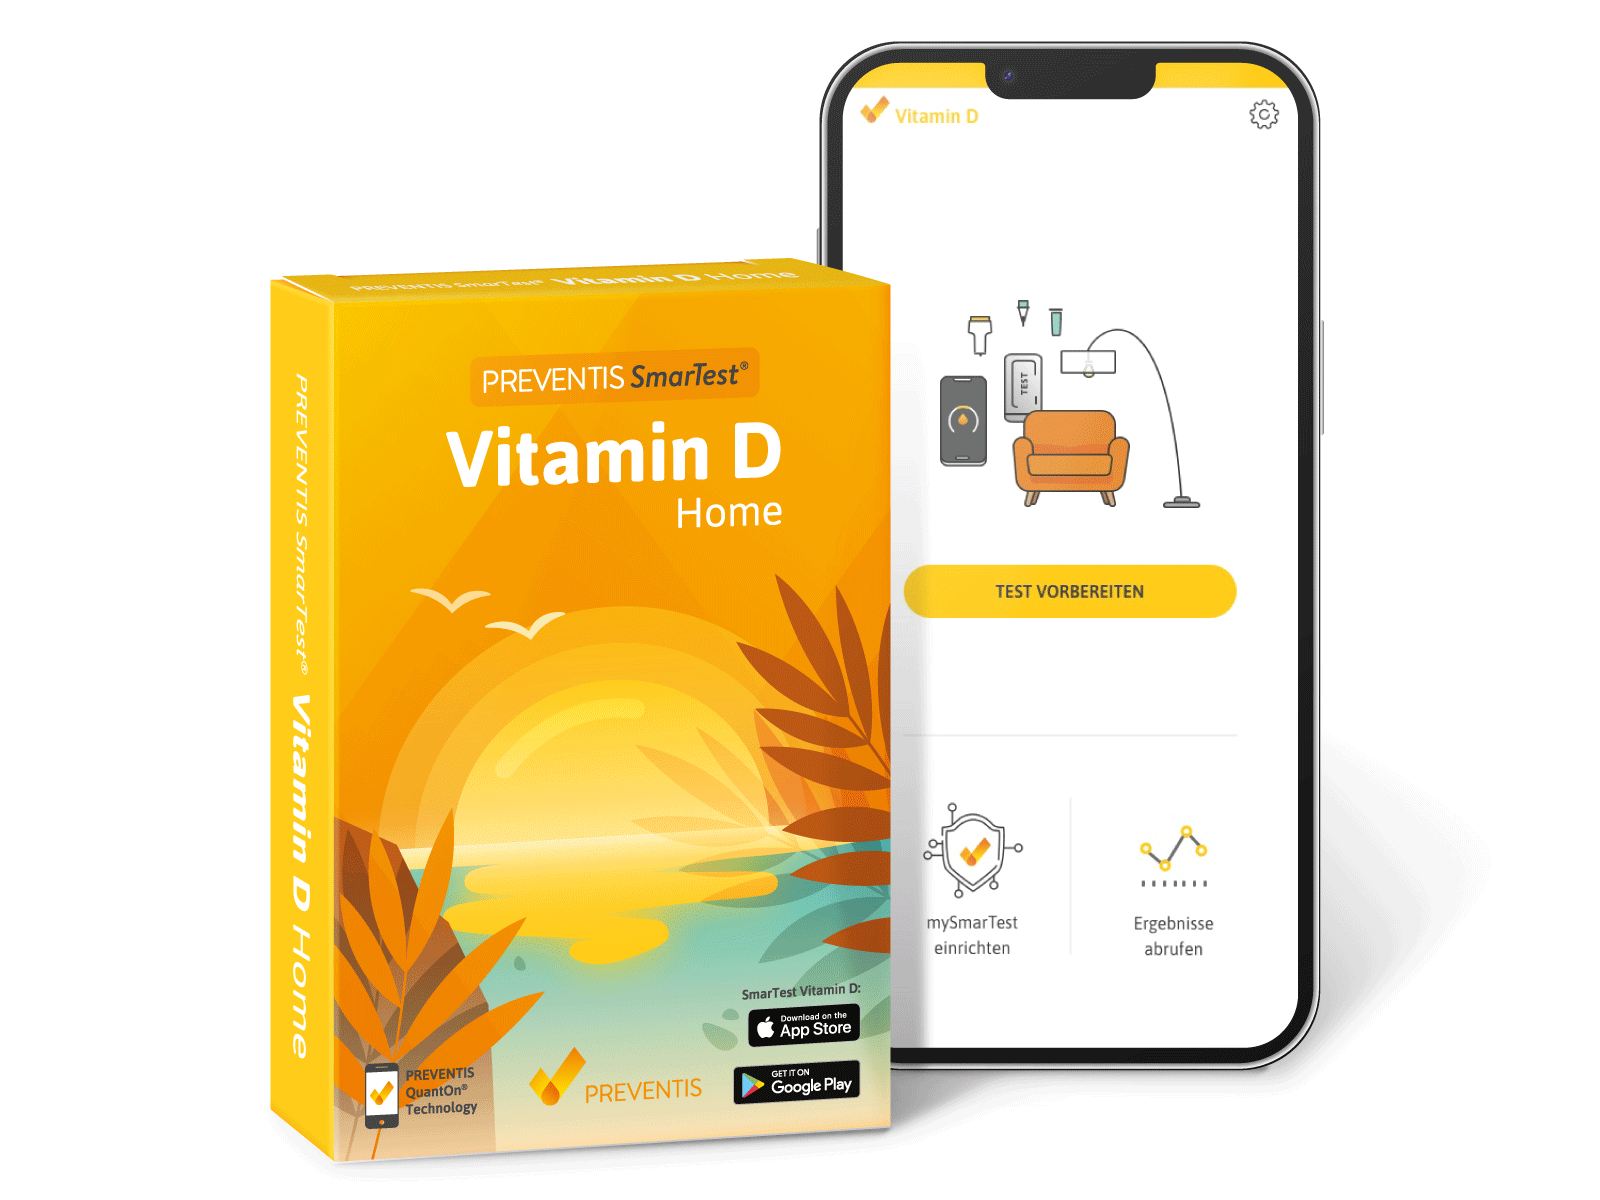 AMM_Produktempfehlung: "SmarTest Vitamin D Home" von Preventis